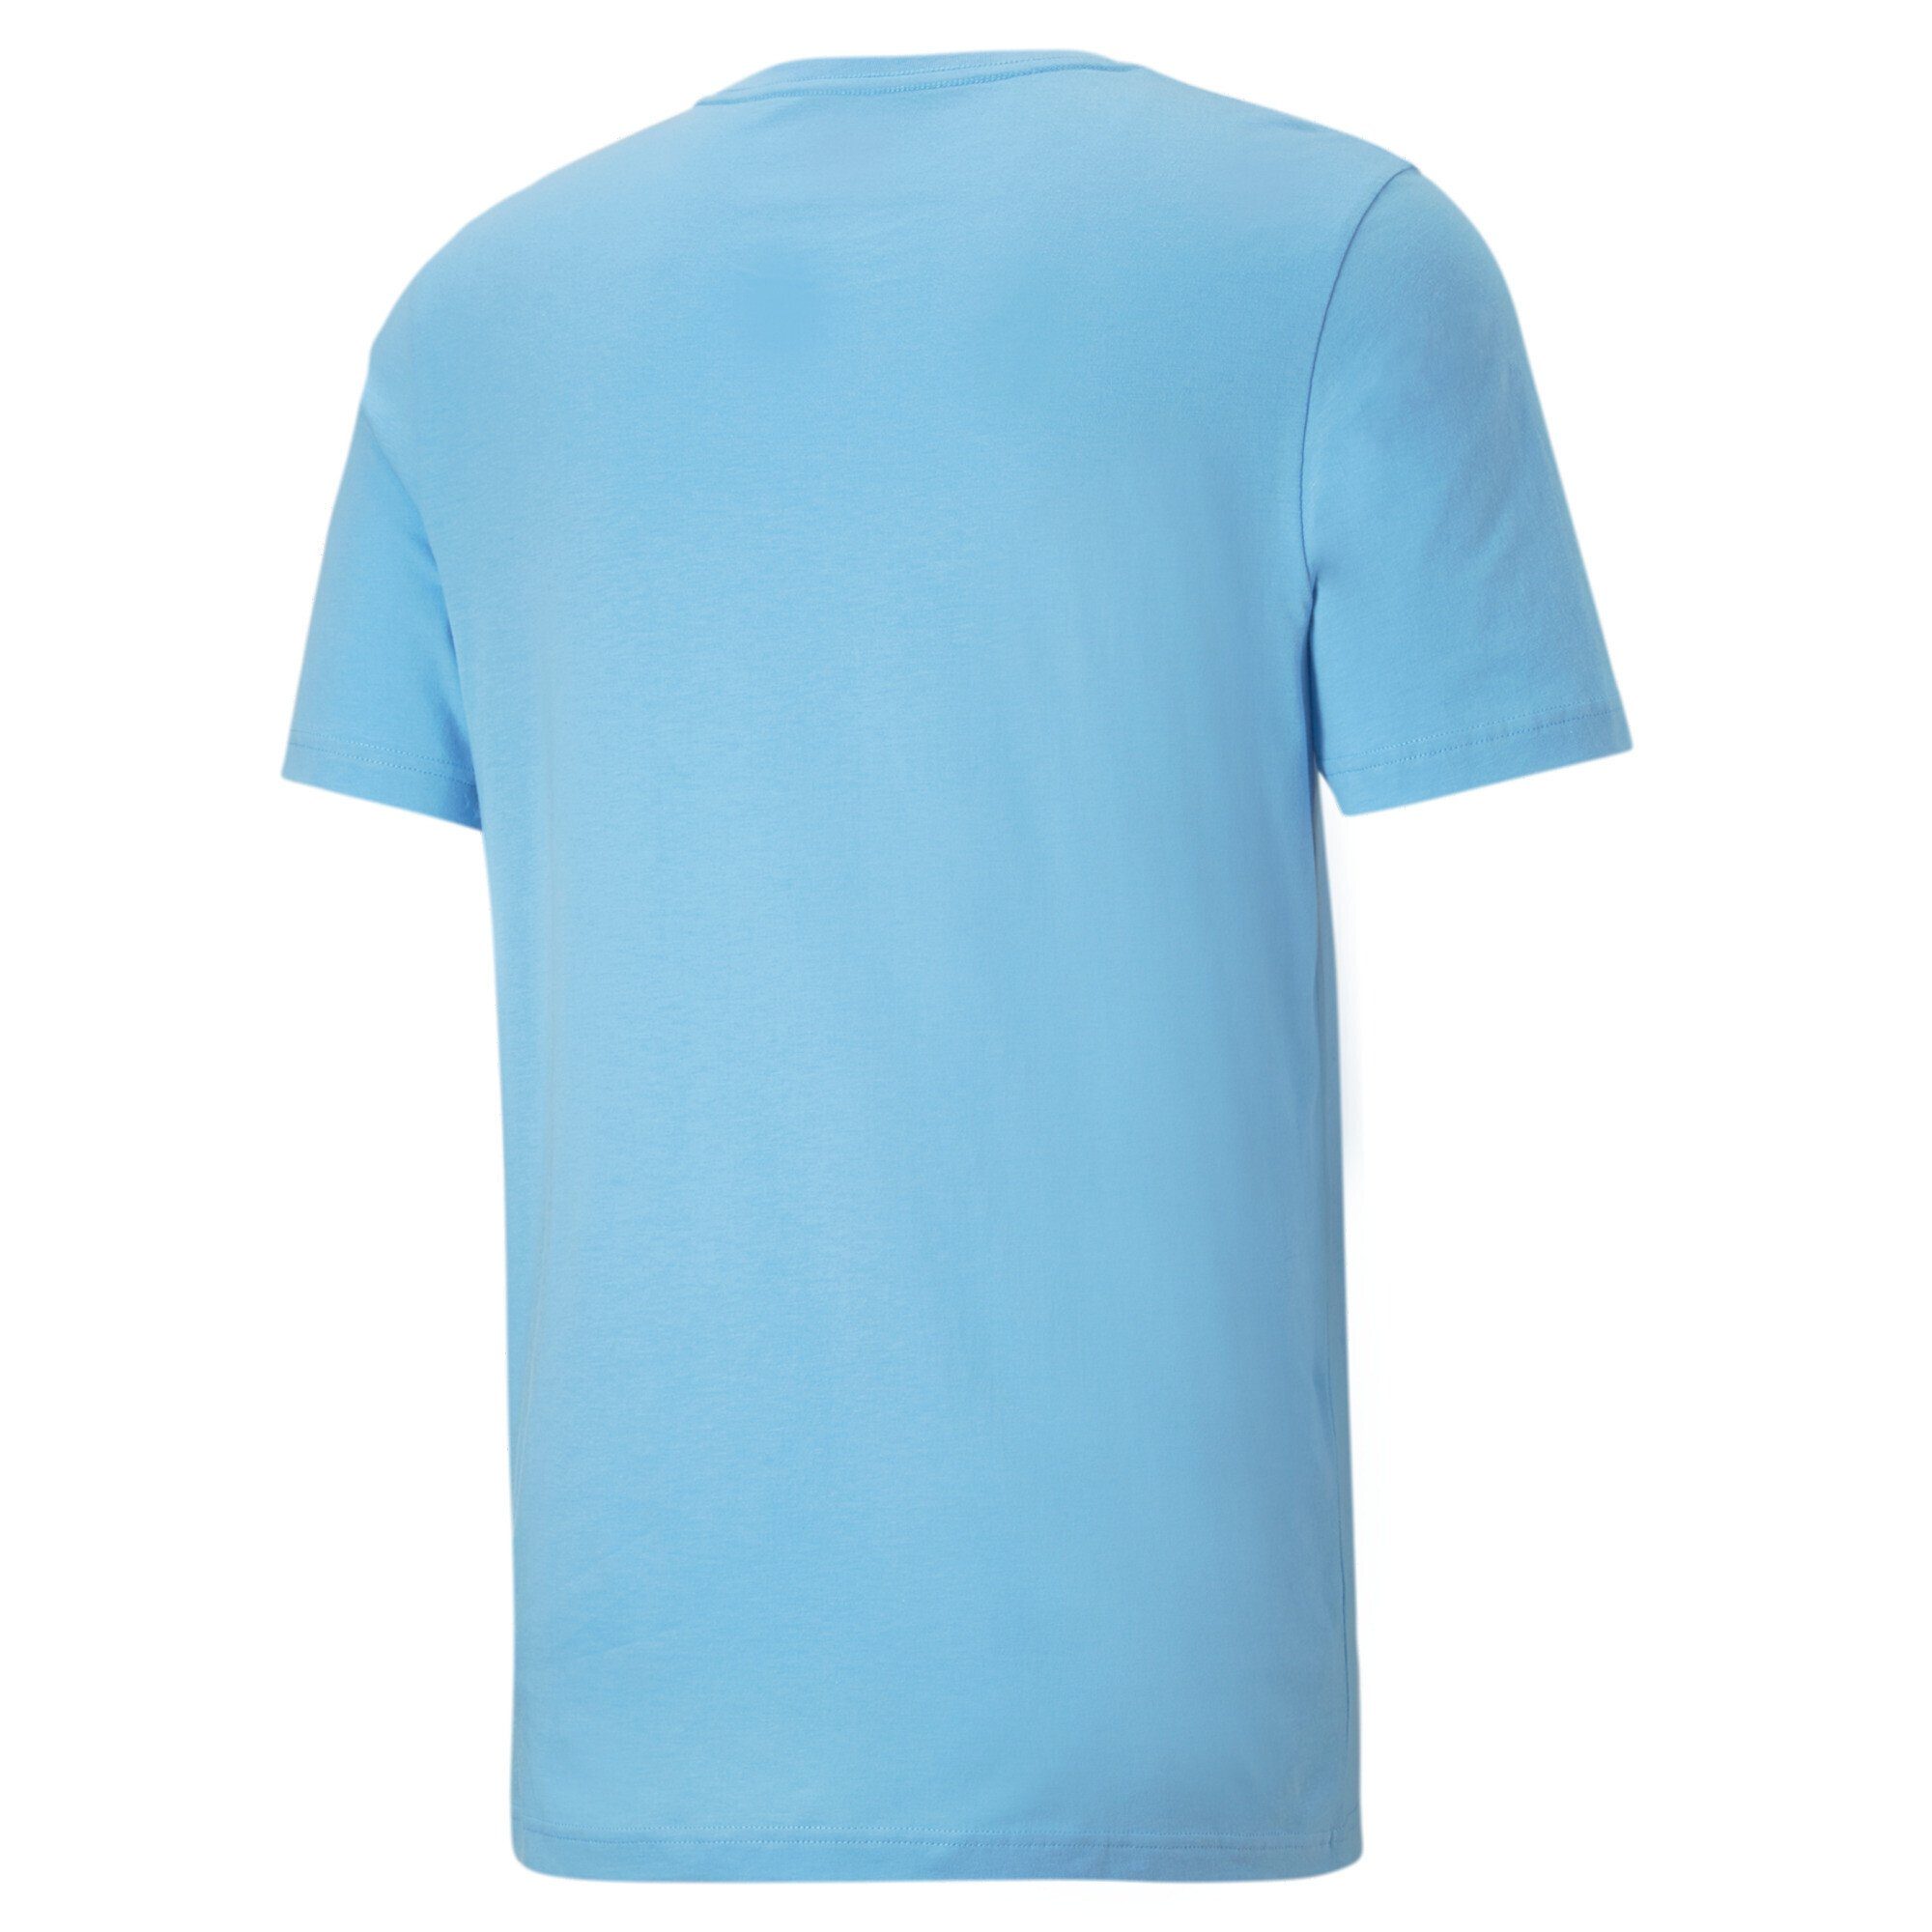 PUMA 22/23 Jungen Champions-Shirt CL Manchester City T-Shirt